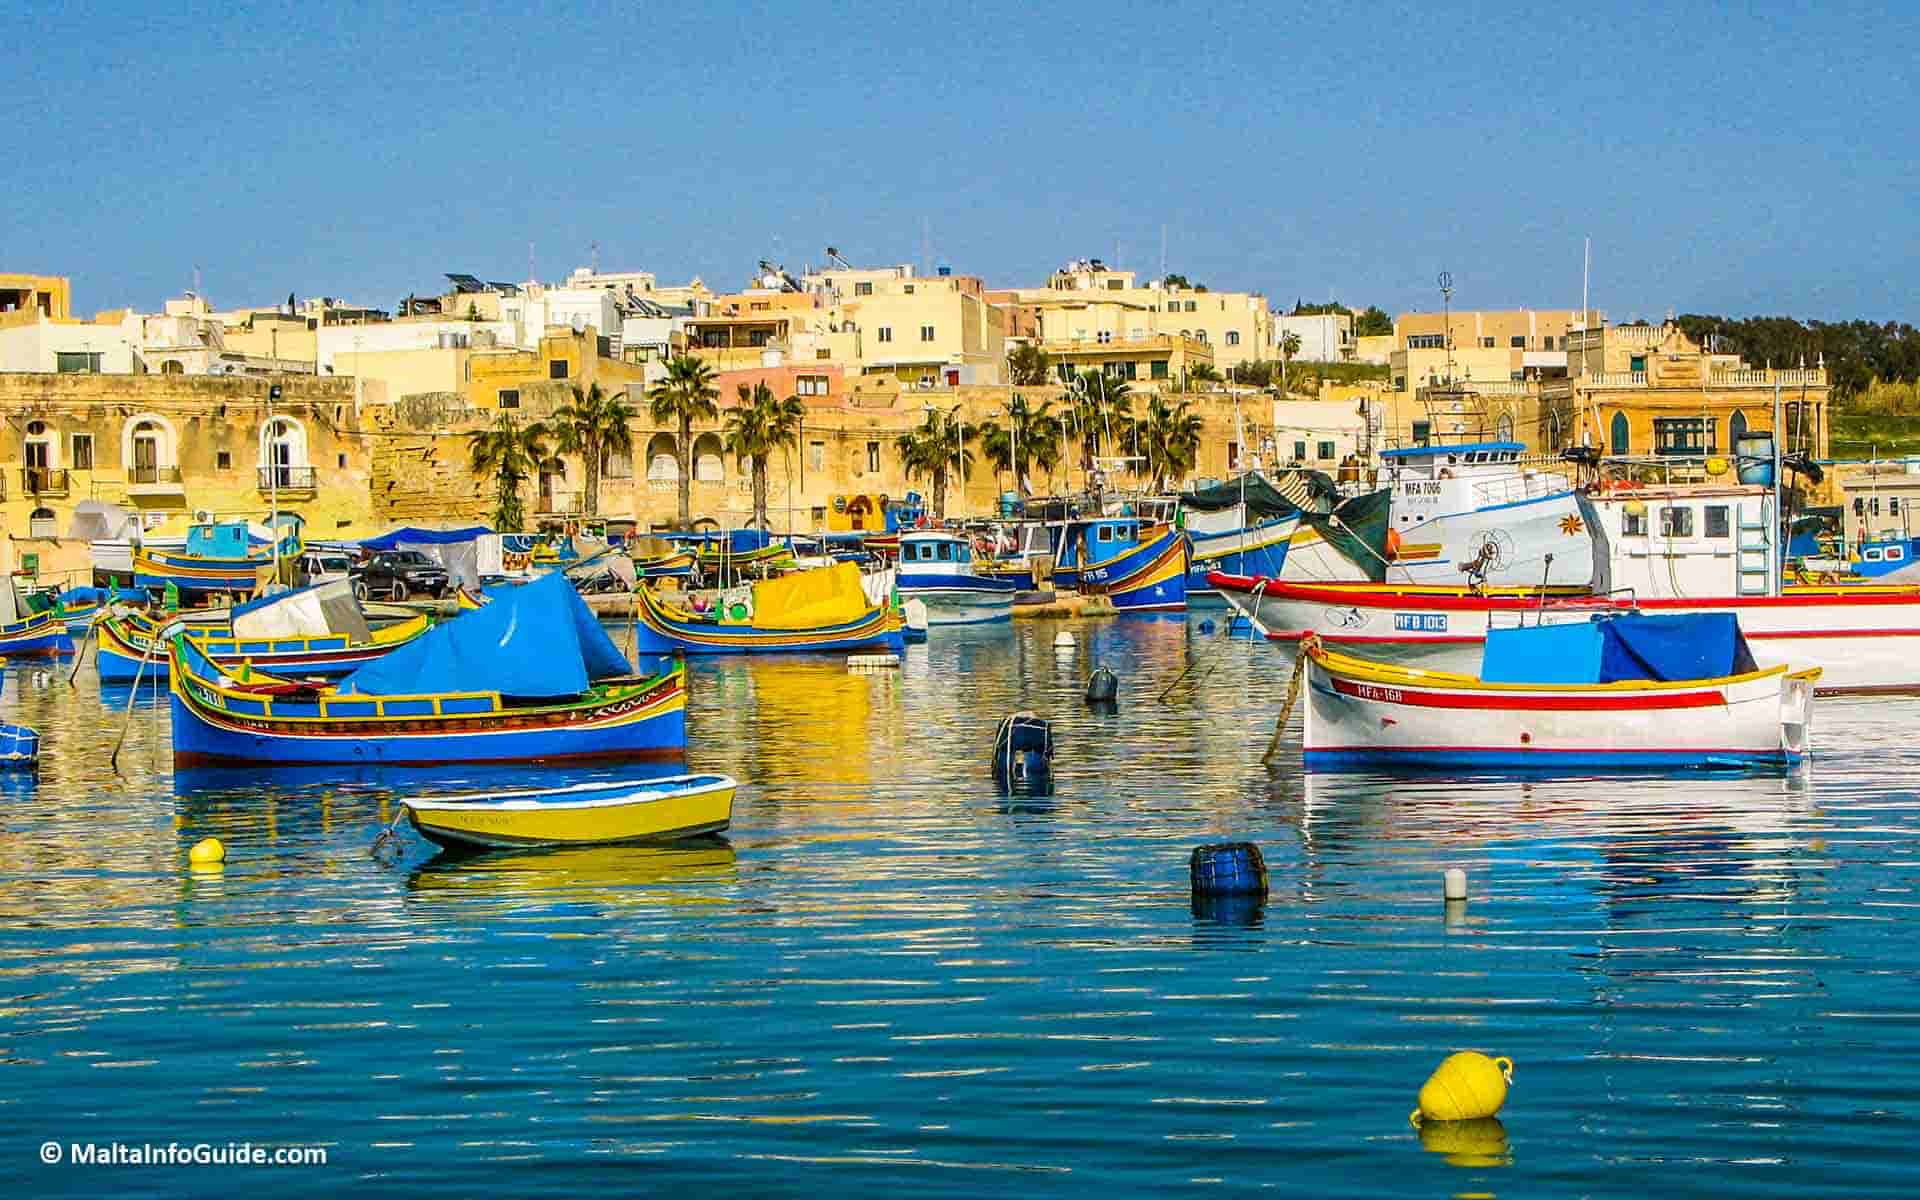 General view of the fishing boats anchored at Marsaxlokk Malta.